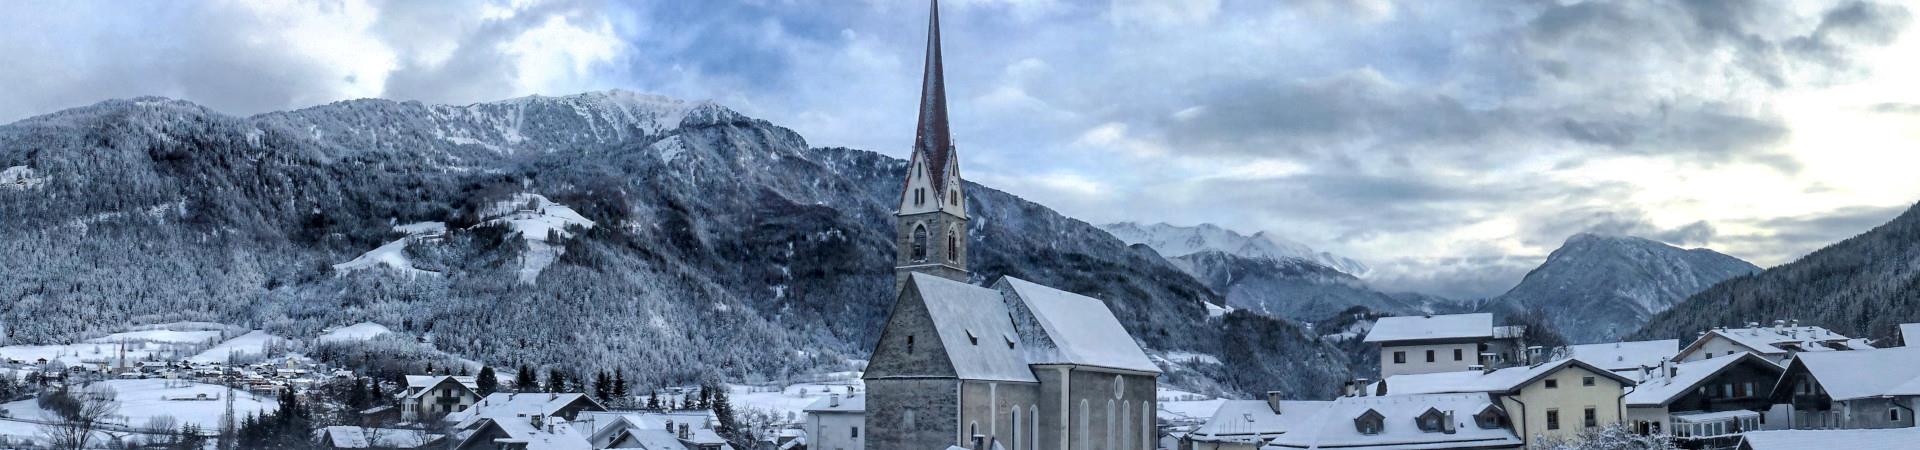 Verschneites+Dorf+mit+Fokus+auf+den+Kirchturm